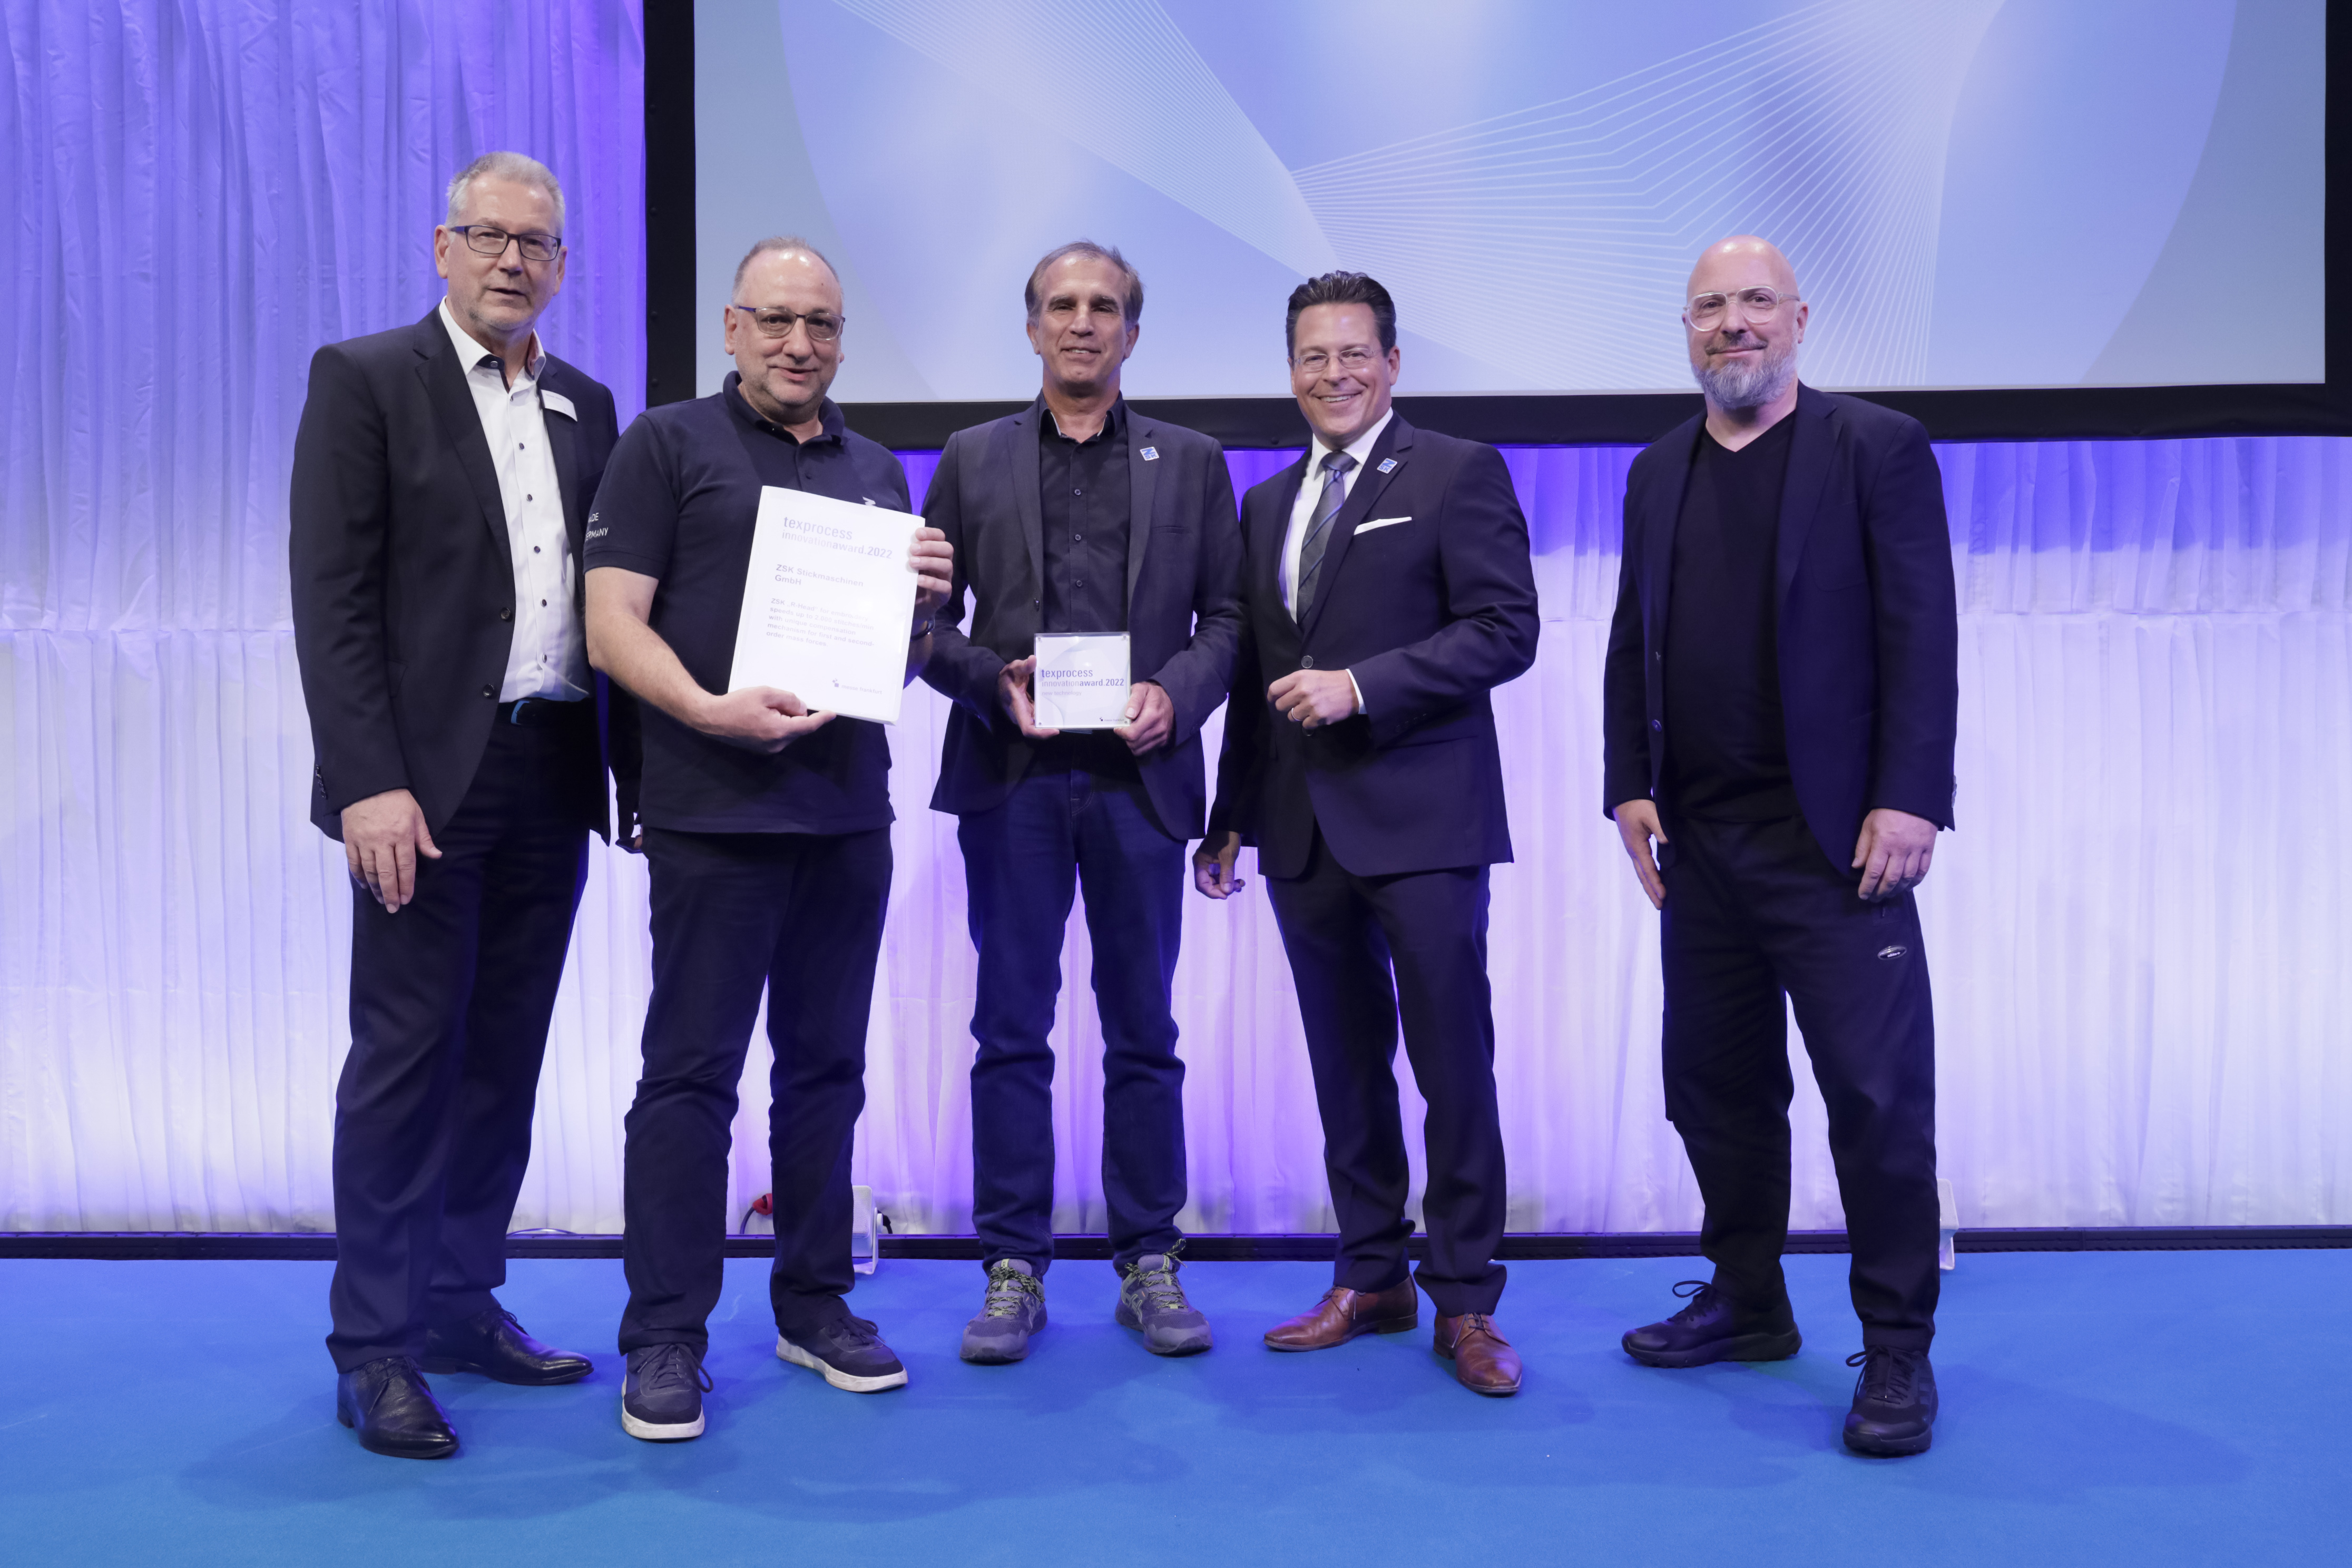 Techtextil + Texprocess Innovation Award 2022 / ZSK Stickmachinen GmbH